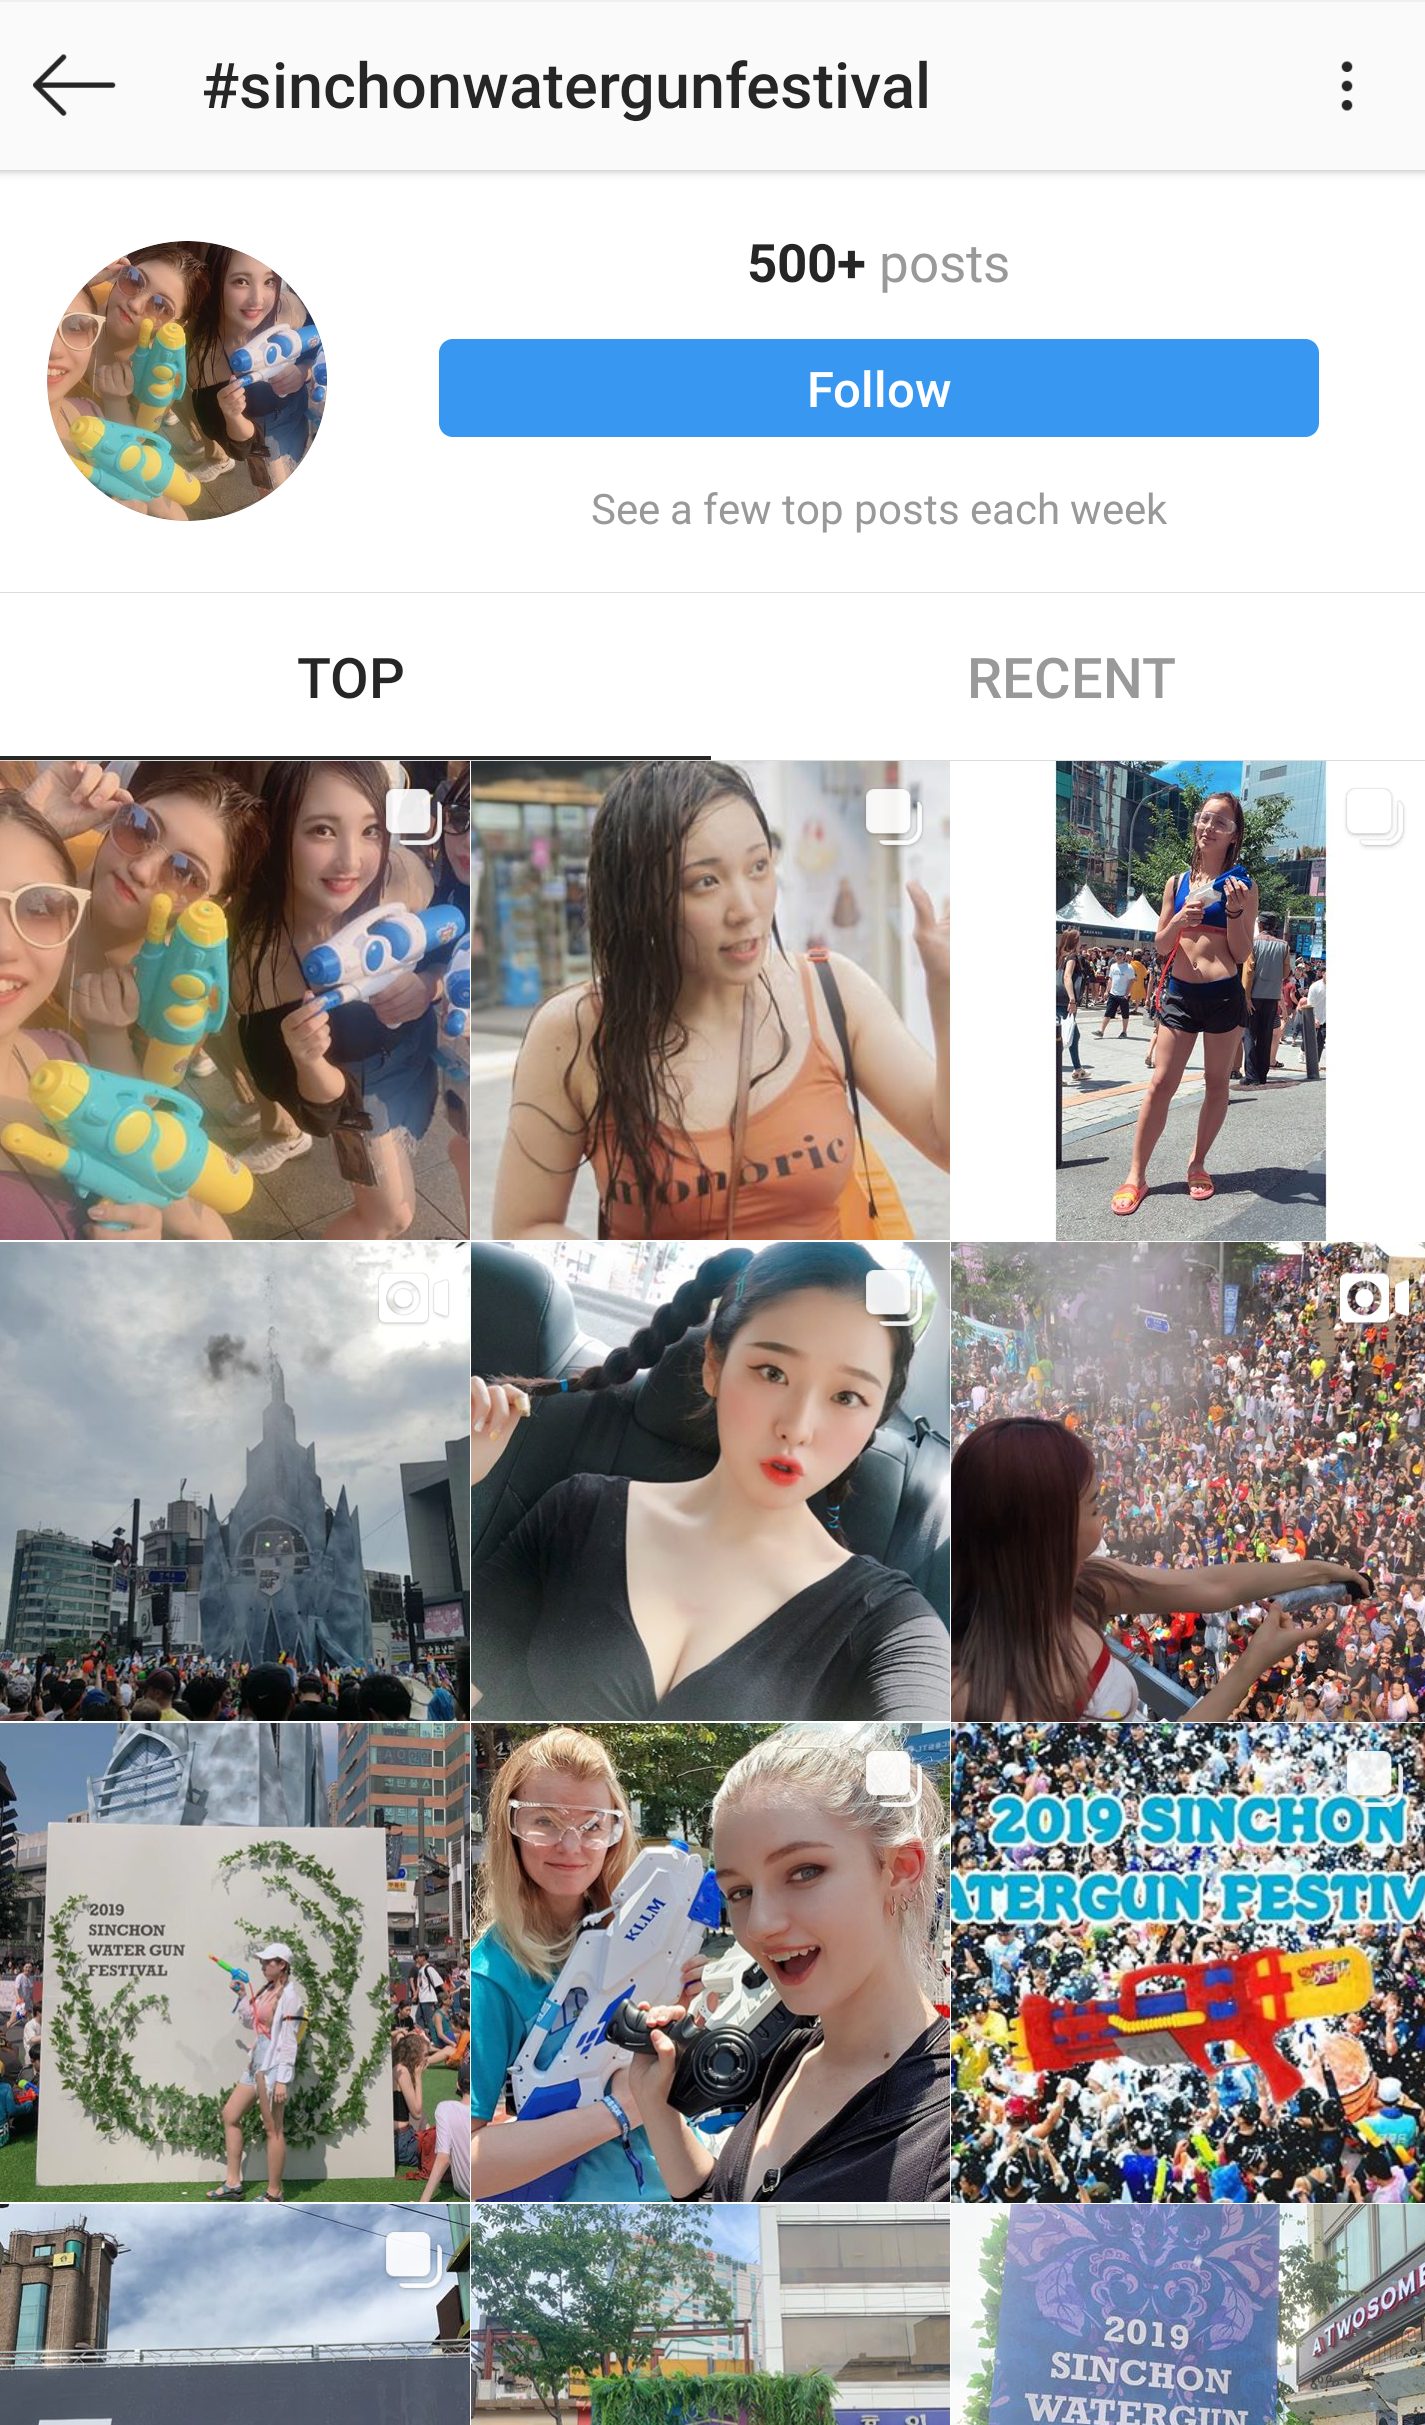 Instagram #sinchonwatergunfestival